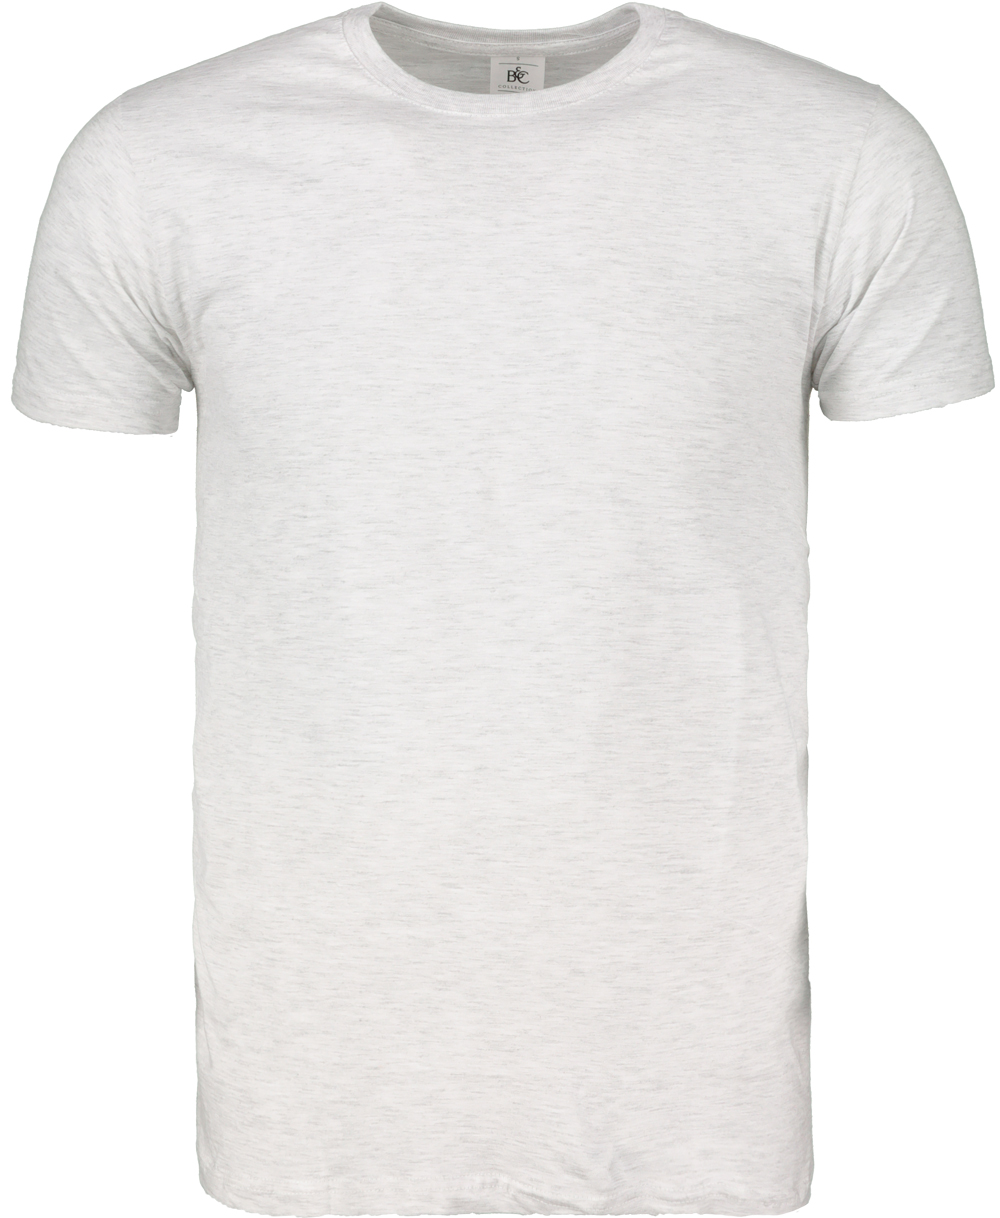 Men's T-shirt B&C Basic